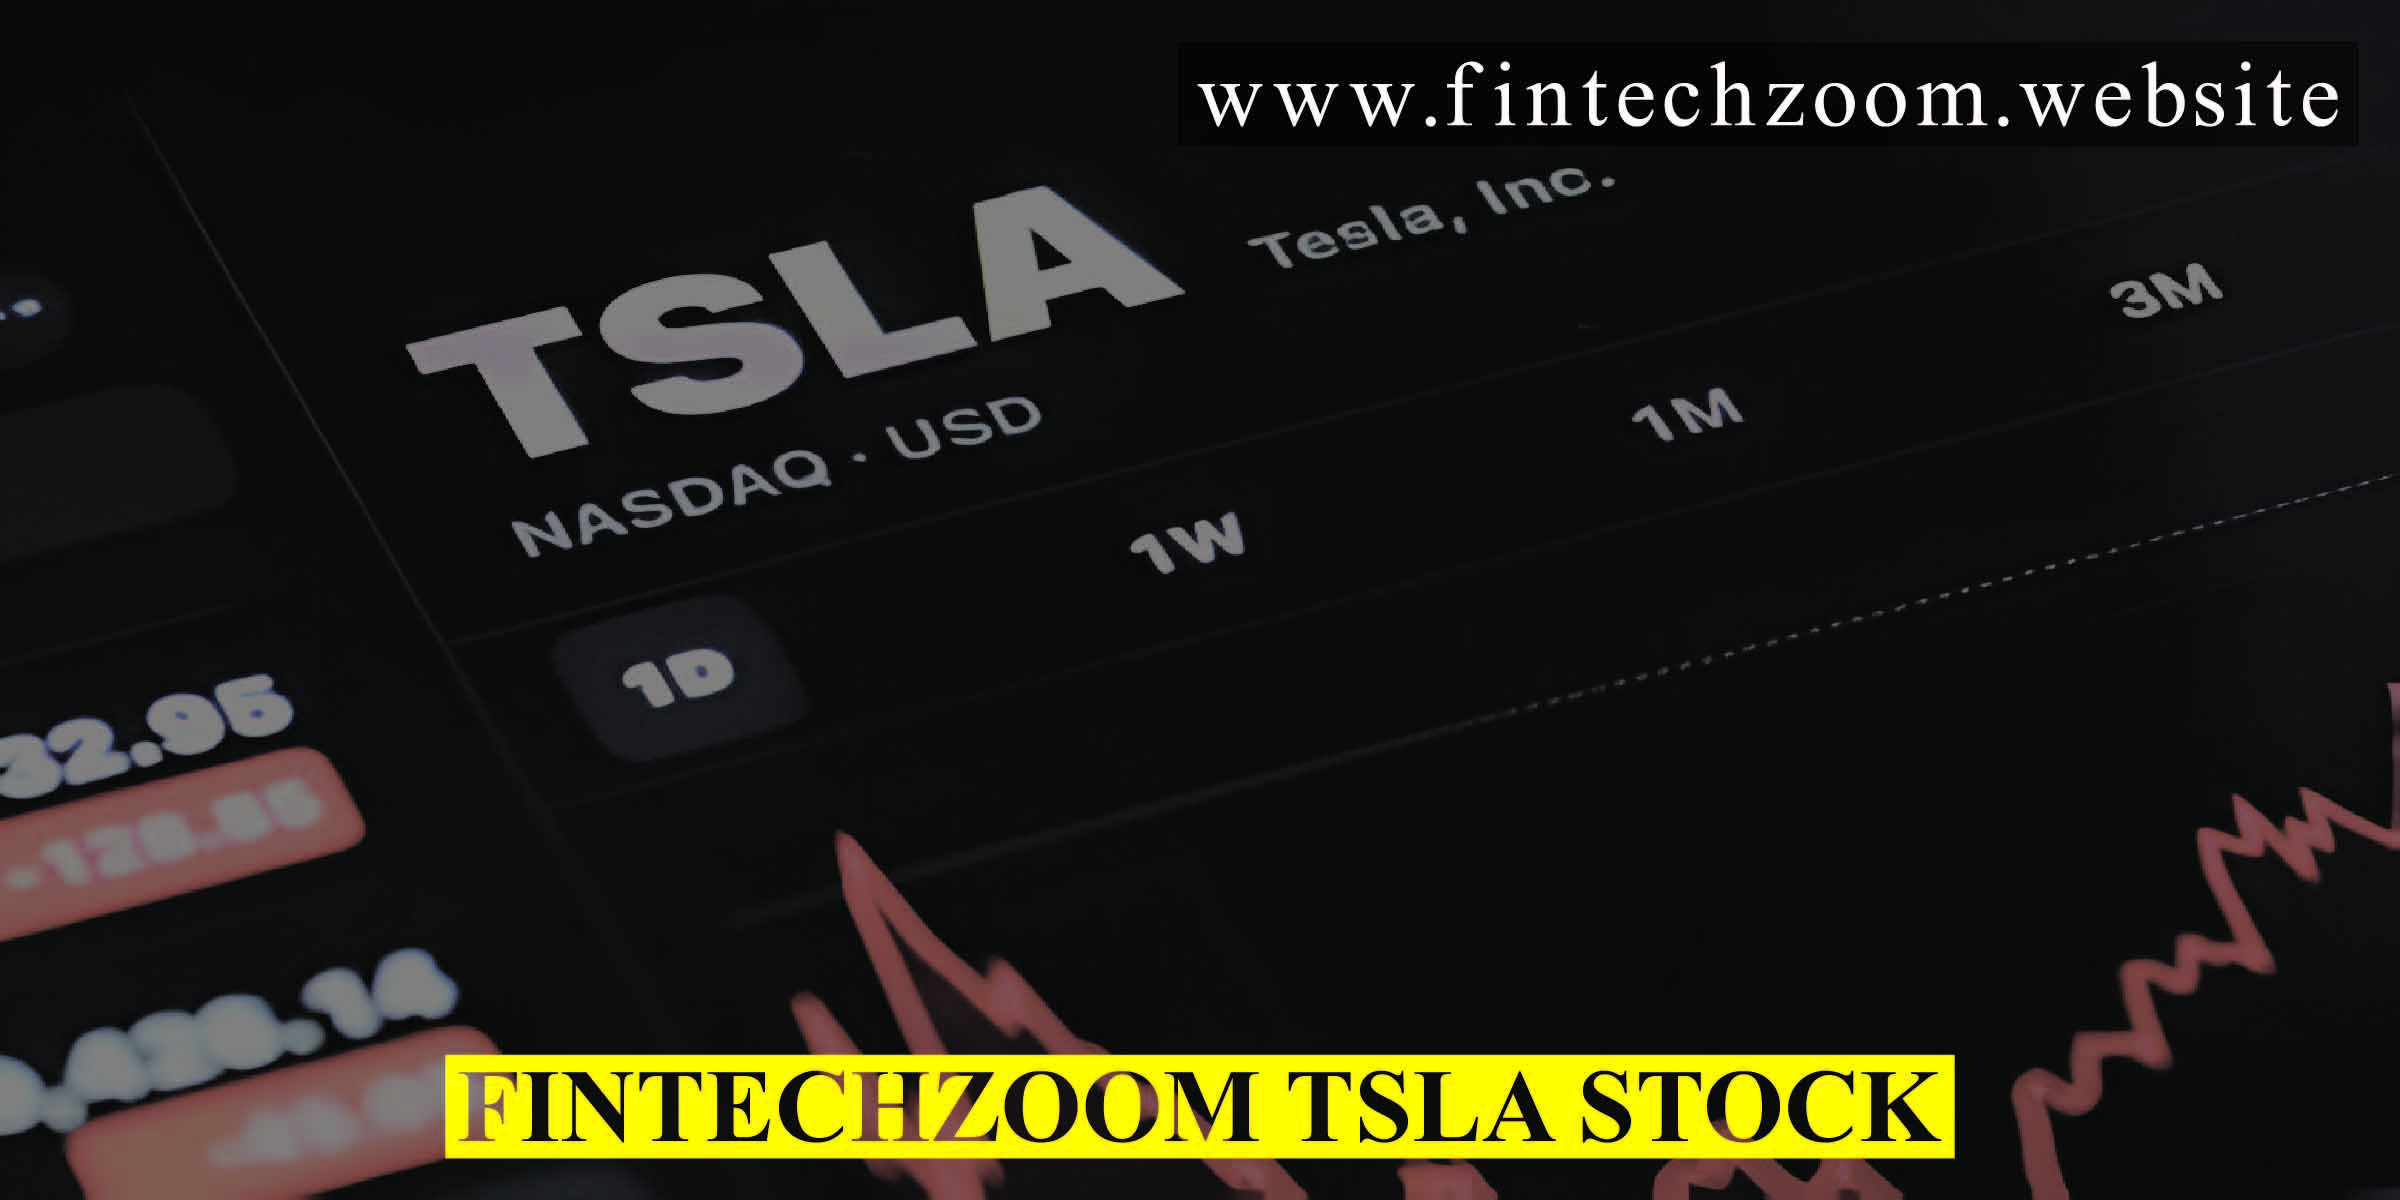 Fintechzoom TSLA Stock